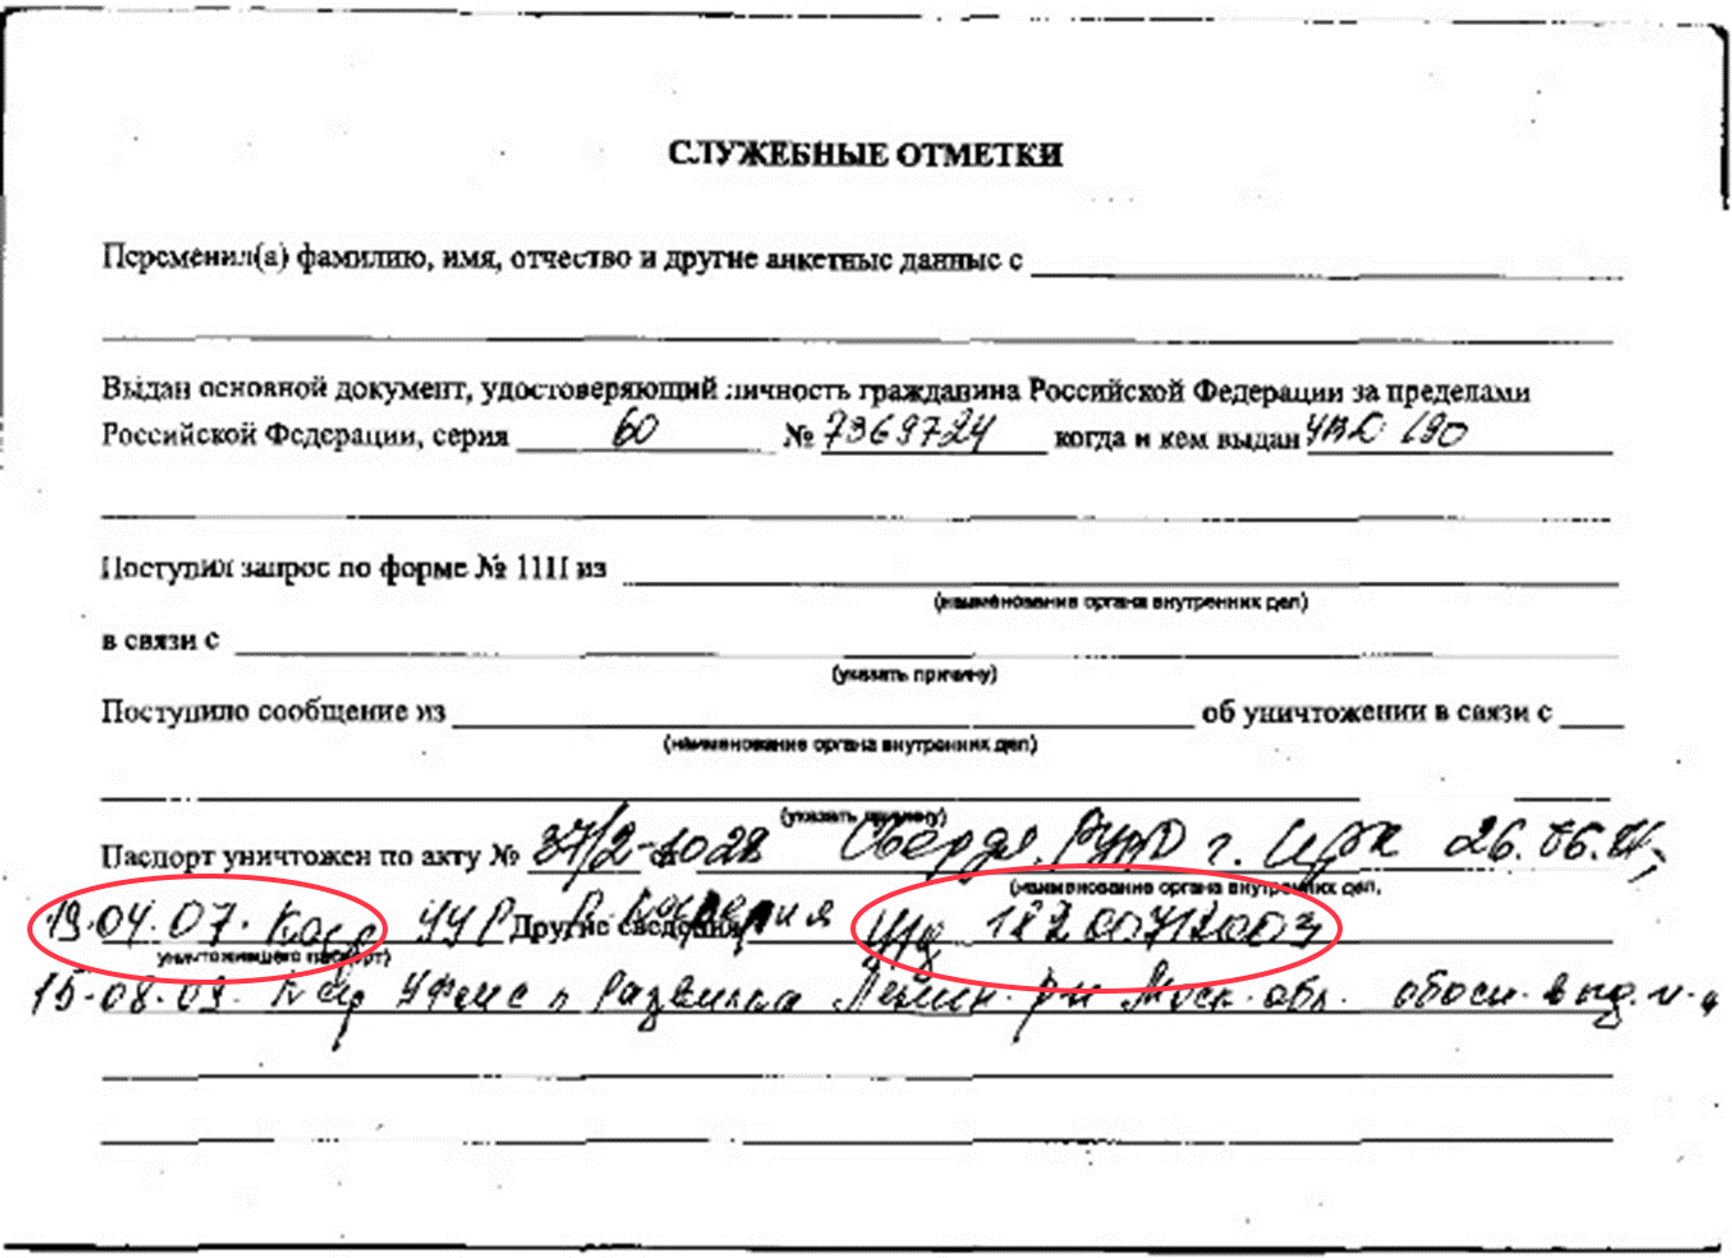 Форма из паспортного файла Красикова, где видно, что его данные запрашивались 19.04.2007 по уголовному делу № 18200712003 